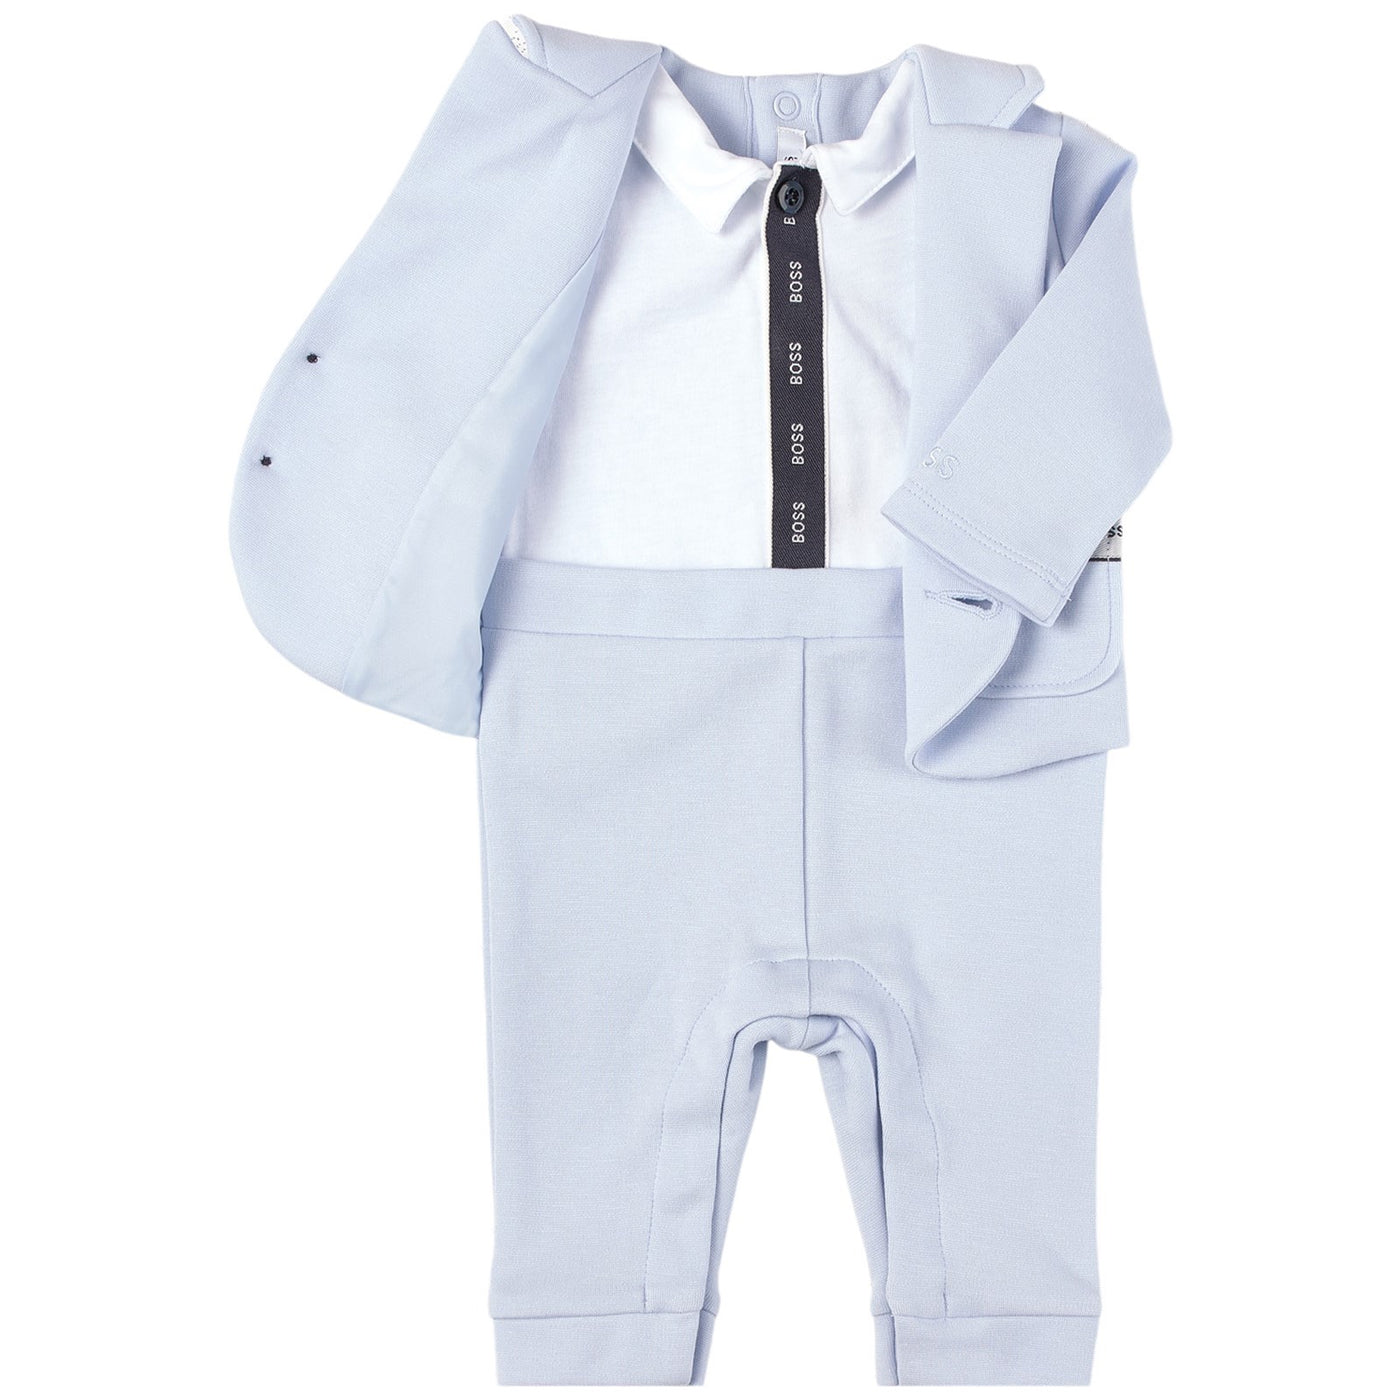 Hugo Boss Baby Onepiece suit (18M)